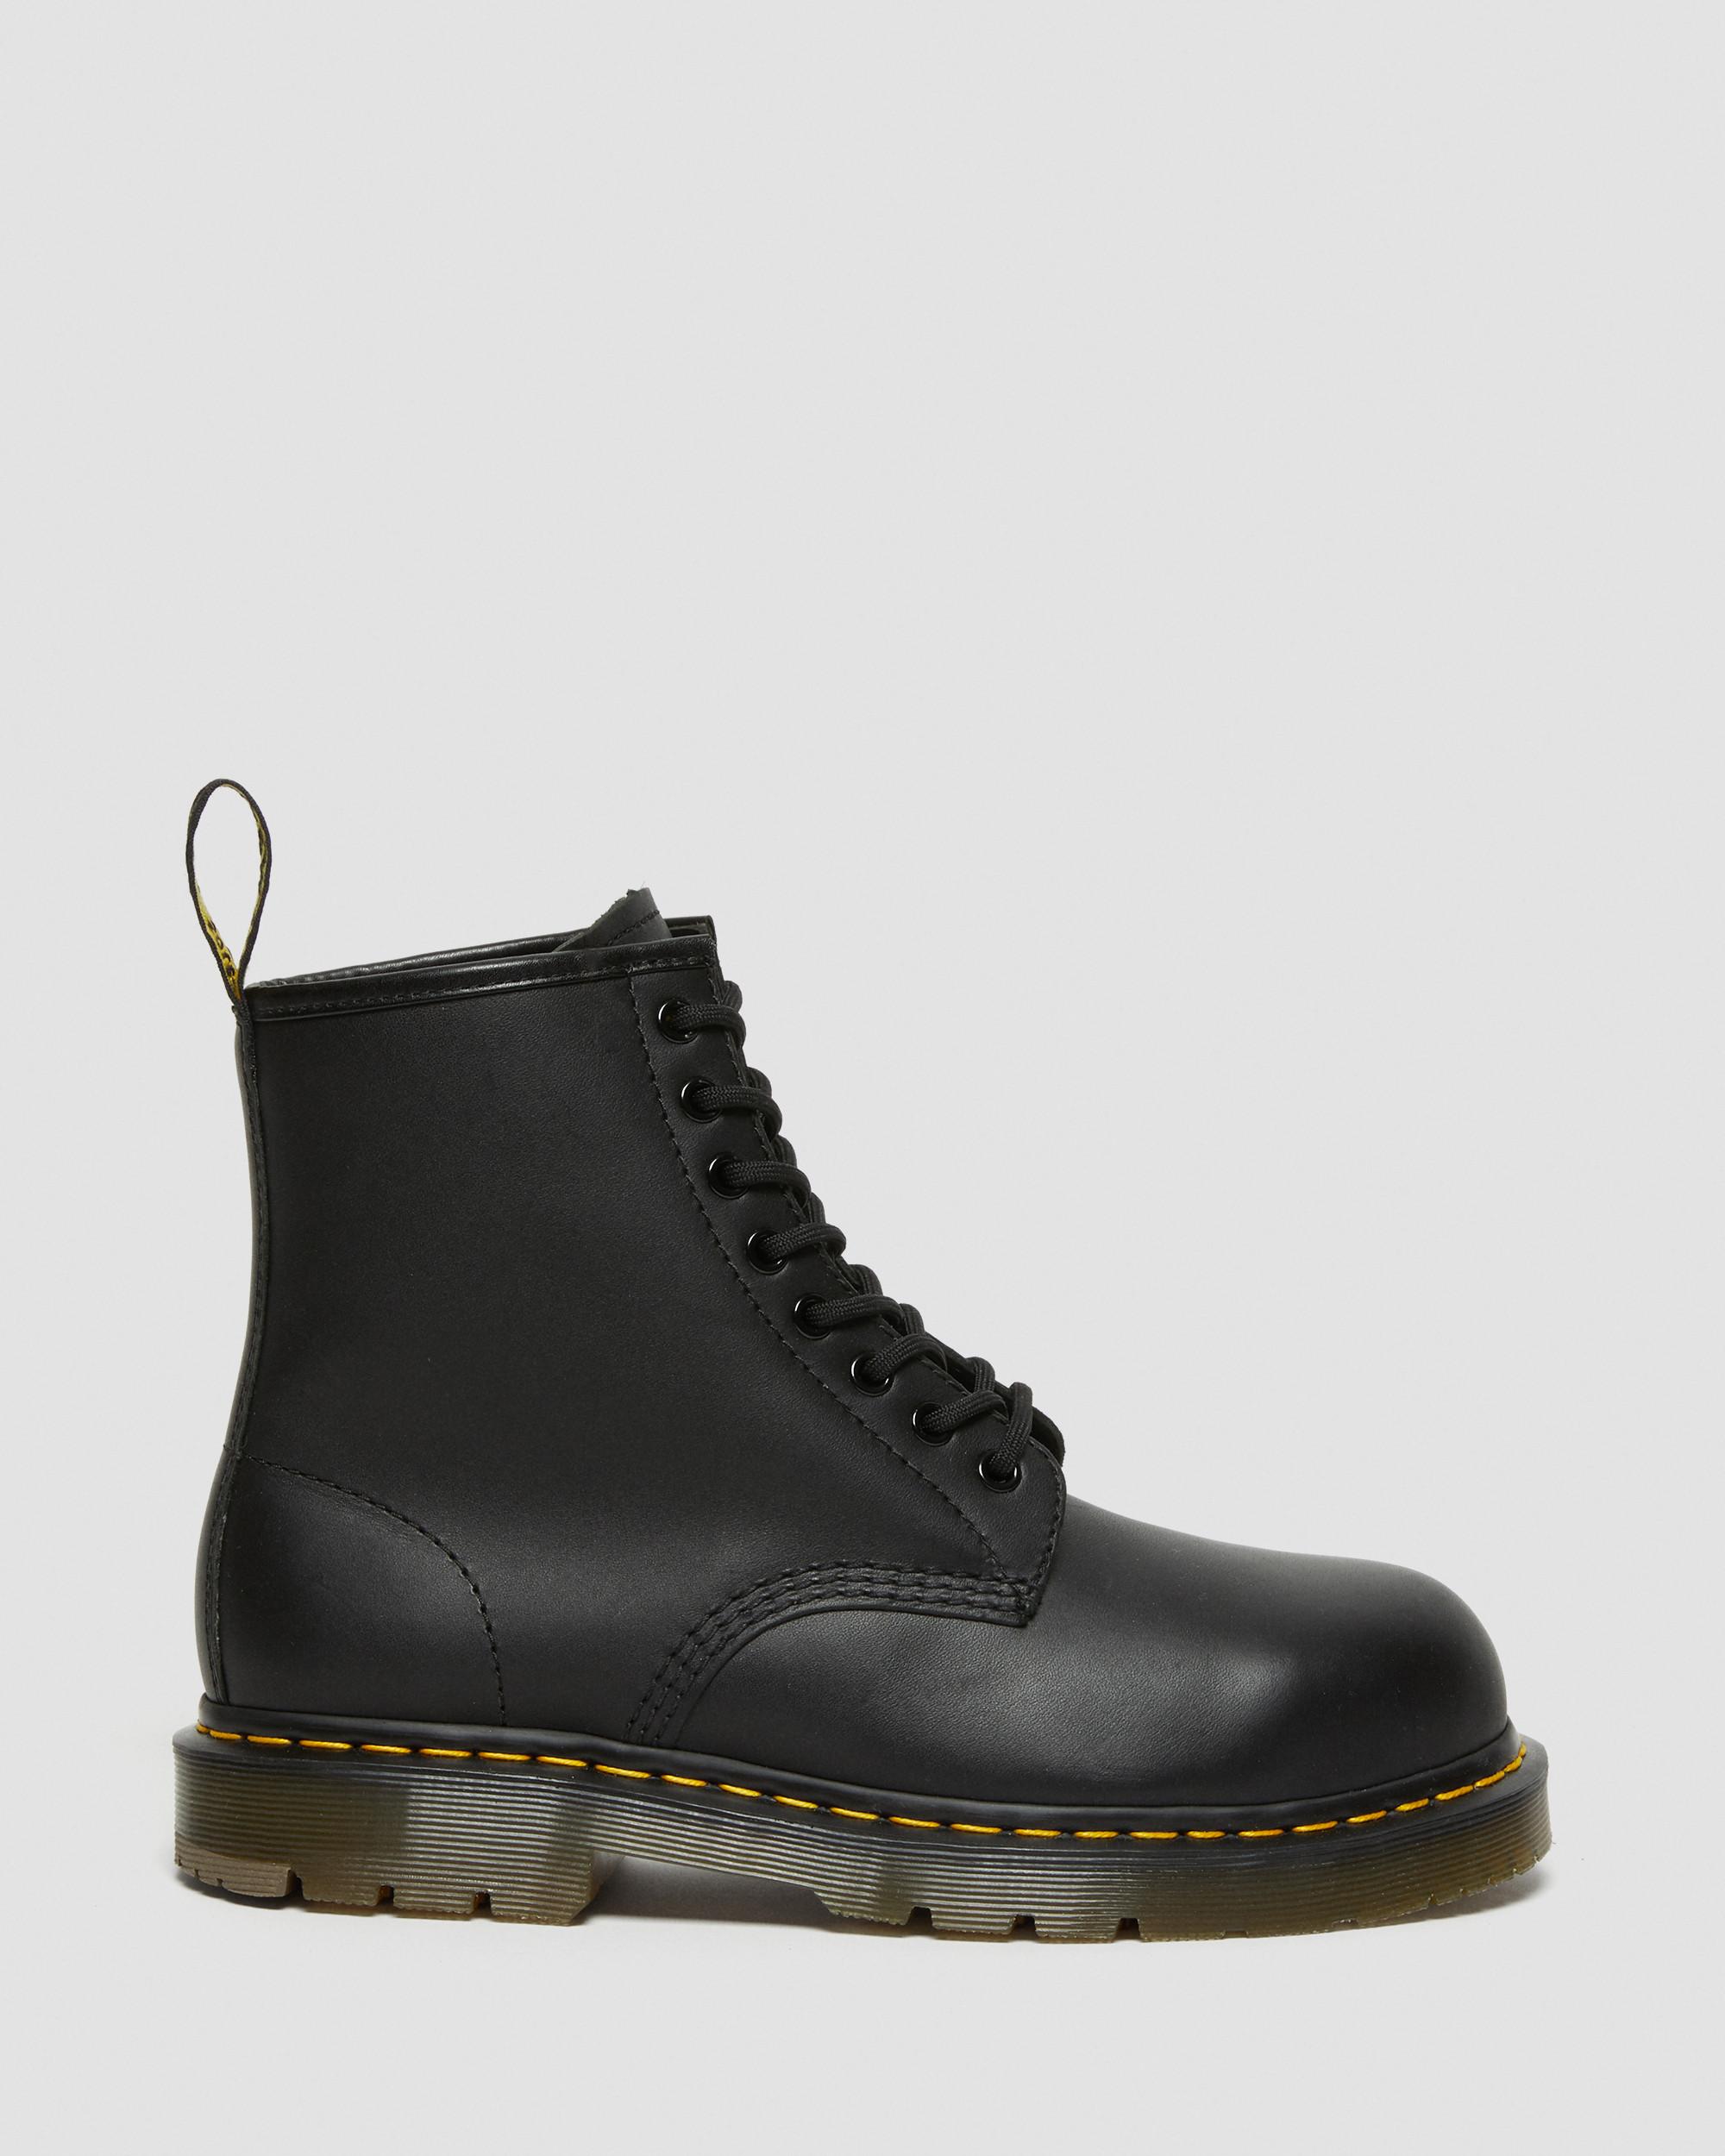 black slip on steel toe boots